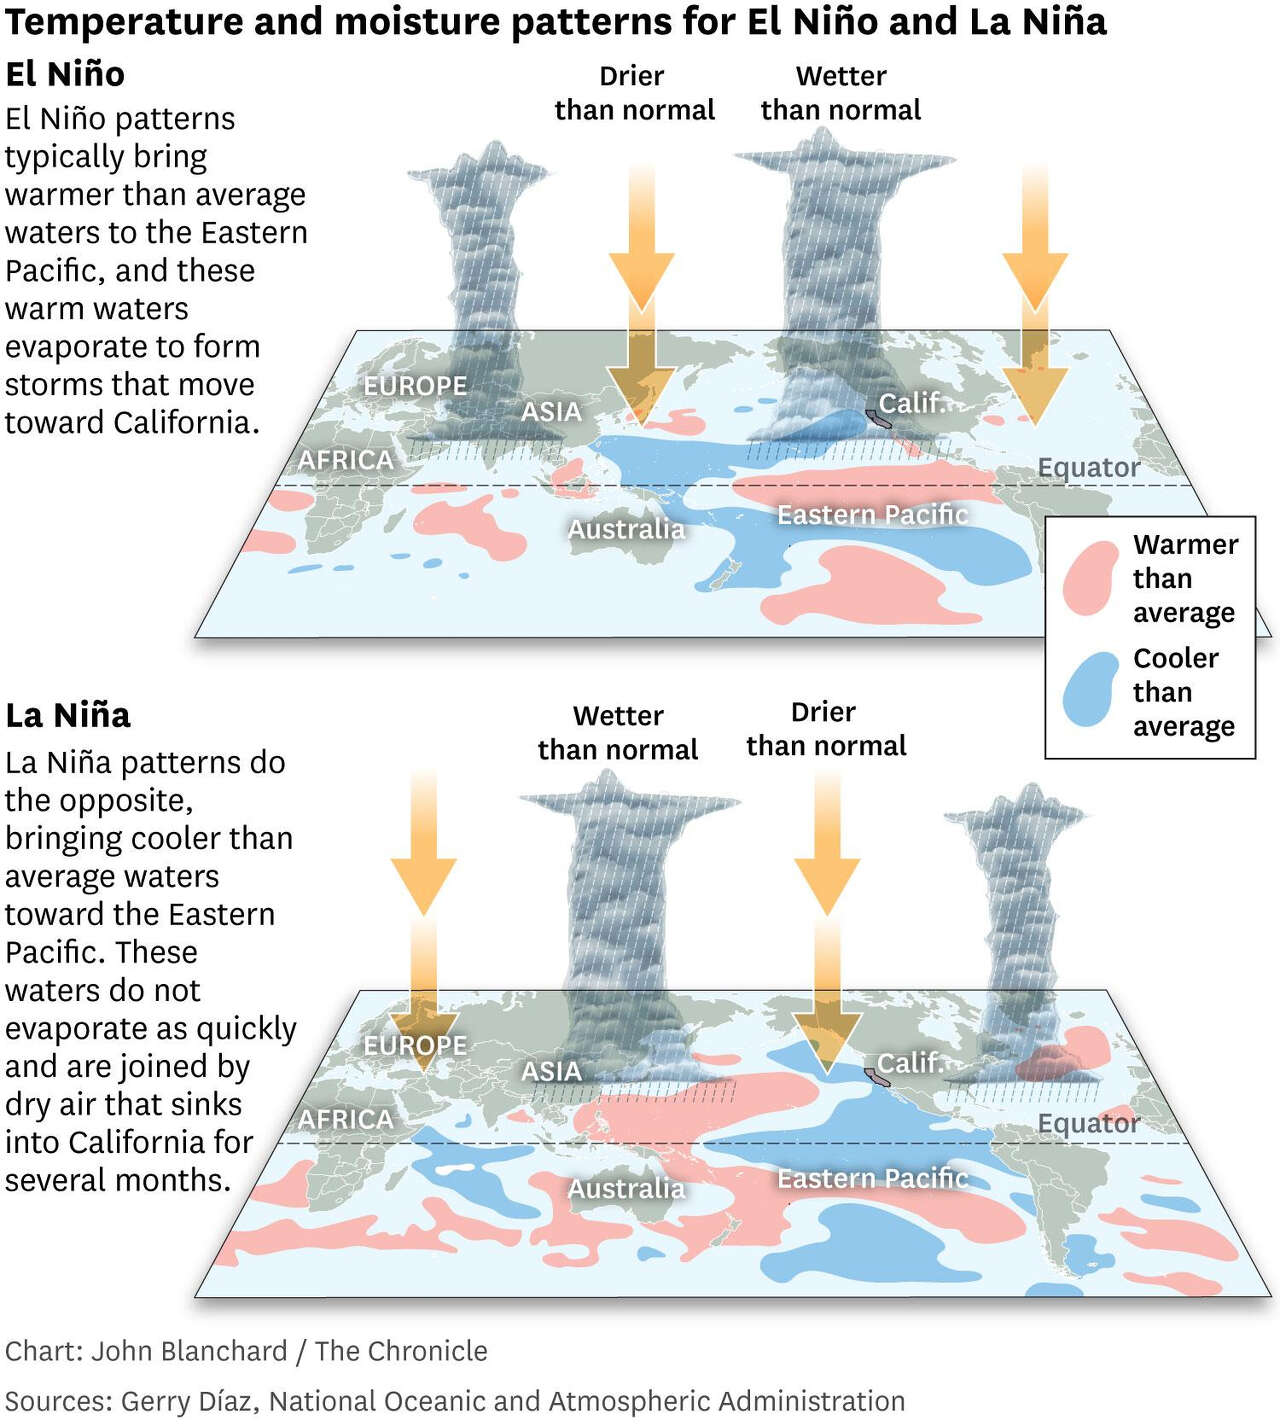 显示El Niño和La Niña的温度和水分模式的图形。El Niño模式通常会给东太平洋带来比平均温度更高的海水，这些温暖的海水蒸发形成风暴，向加州移动。La Niña模式将凉爽的海水带到东太平洋，并将干燥的空气带到加州。